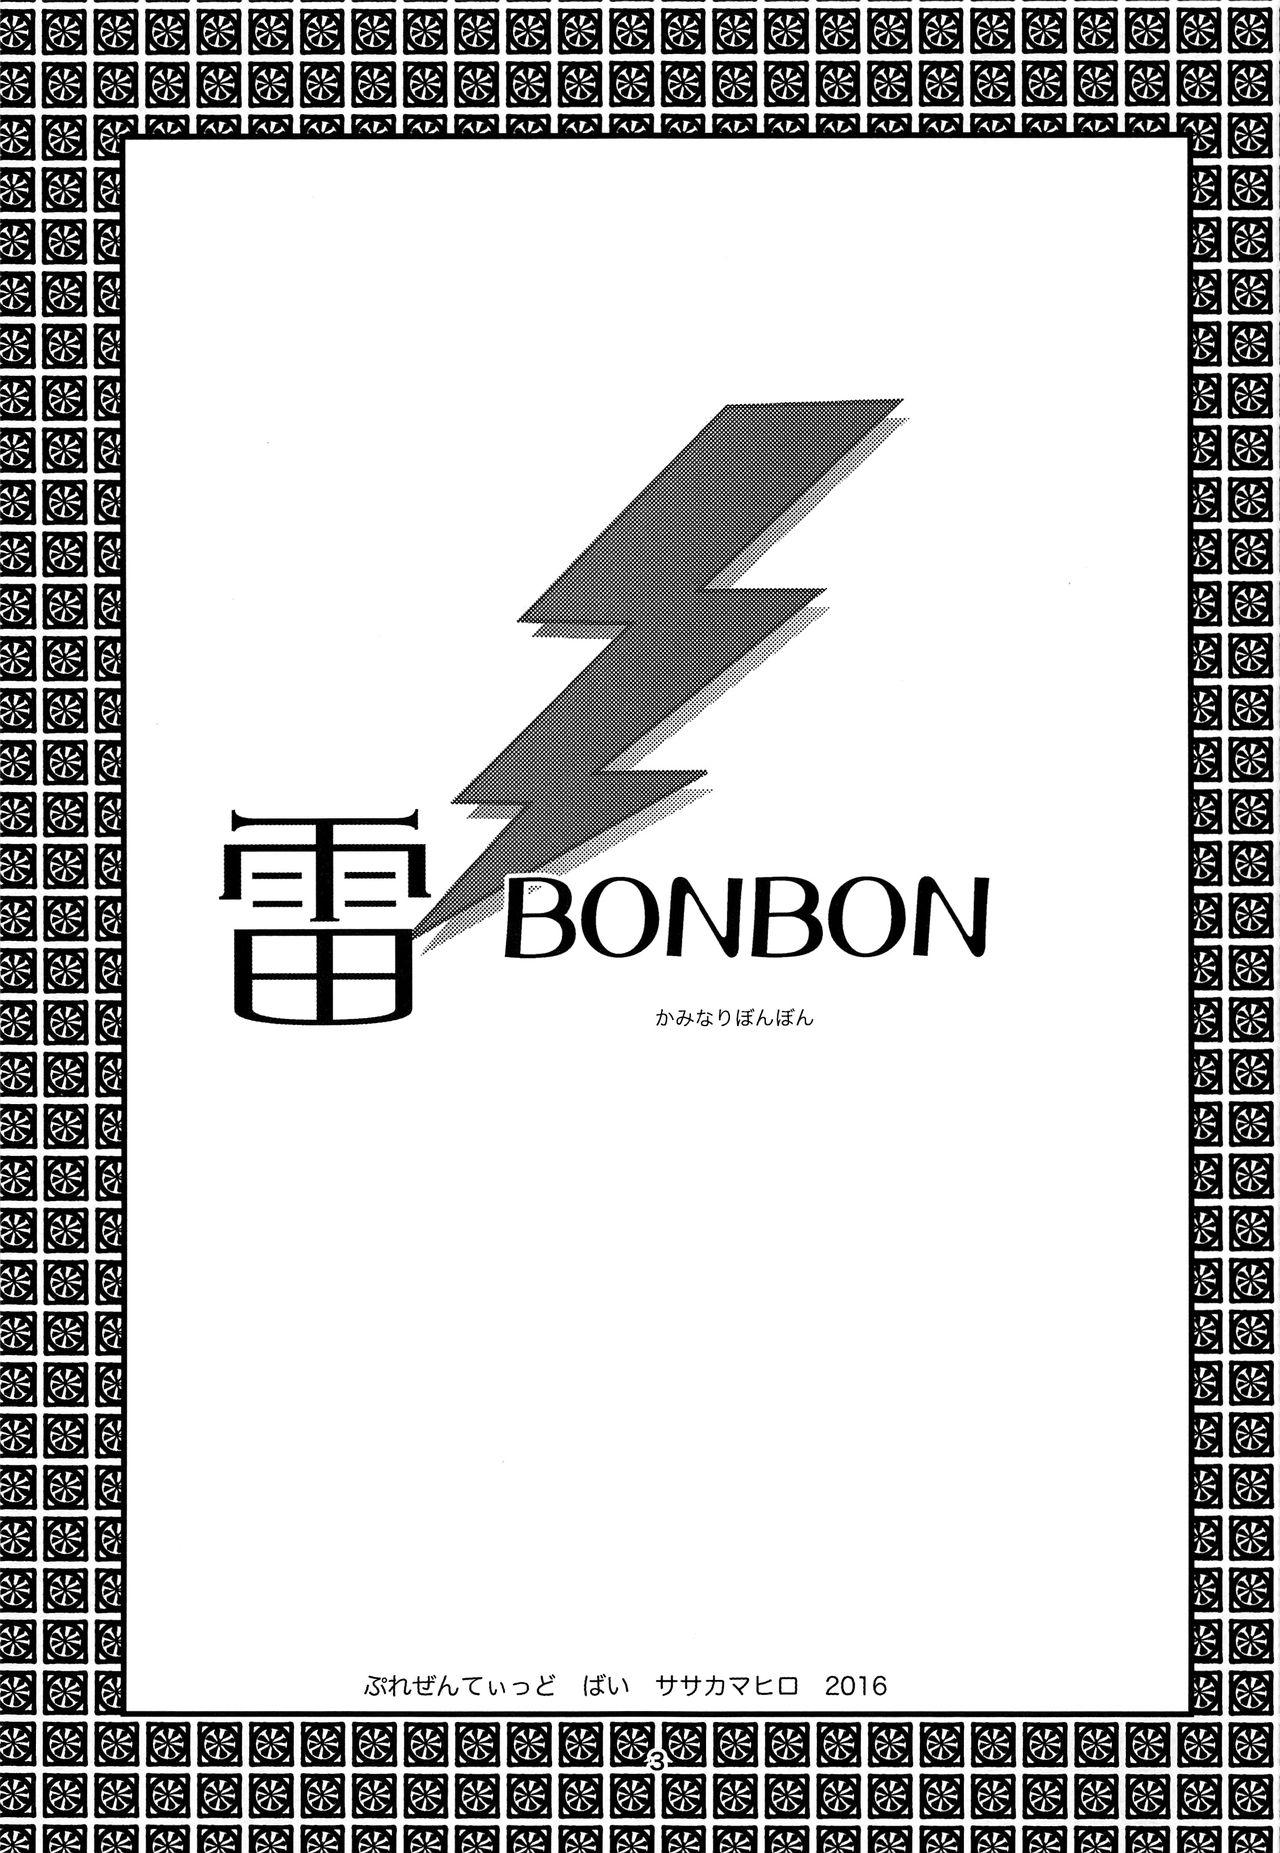 Kaminari BONBON 1